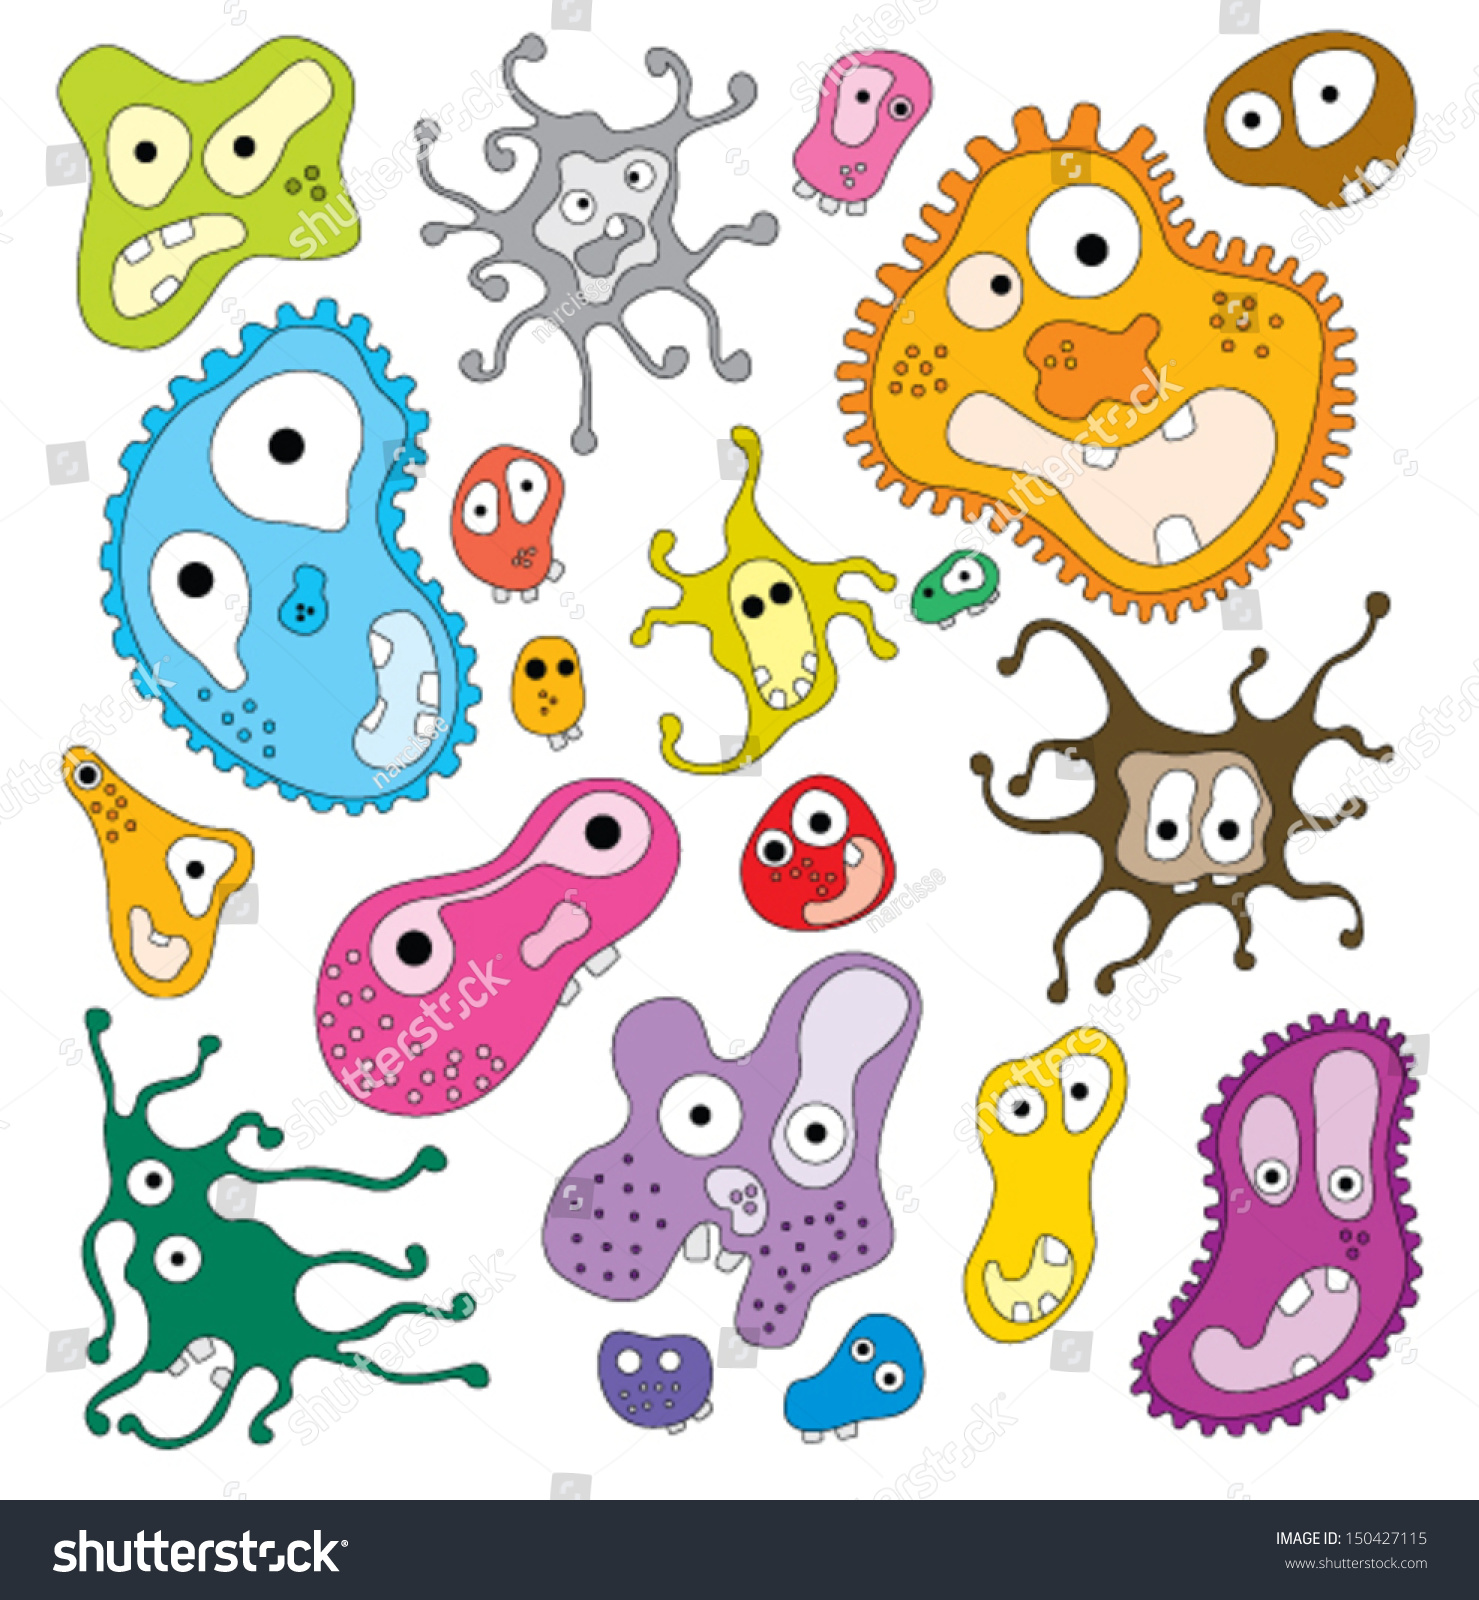 Микробы и вирусы для дошкольников